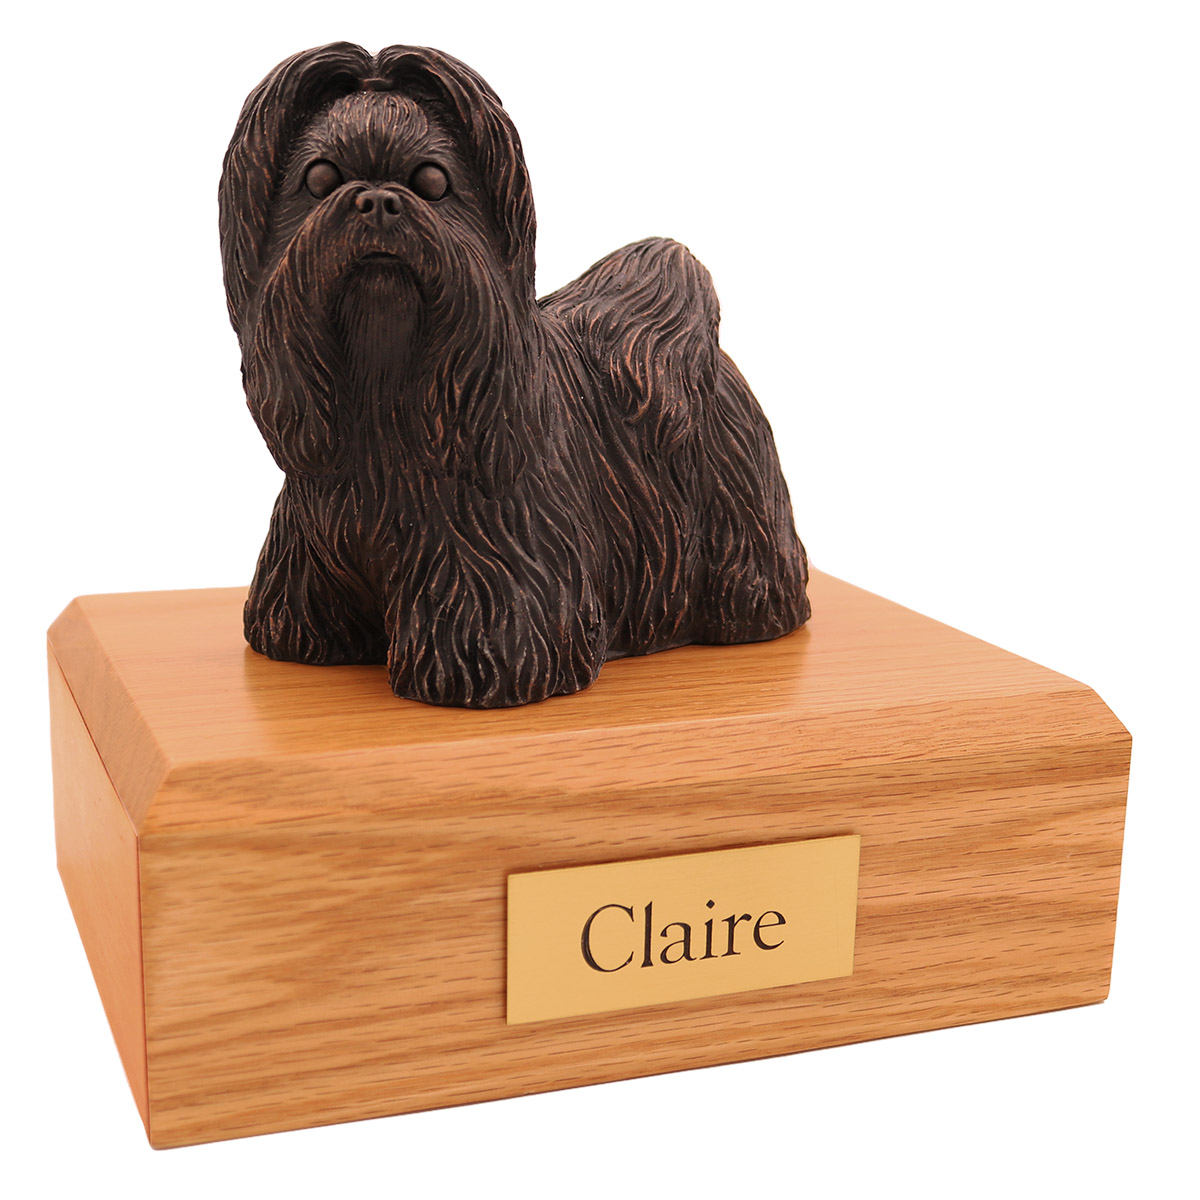 Dog, Shih Tzu, Bronze - Figurine Urn